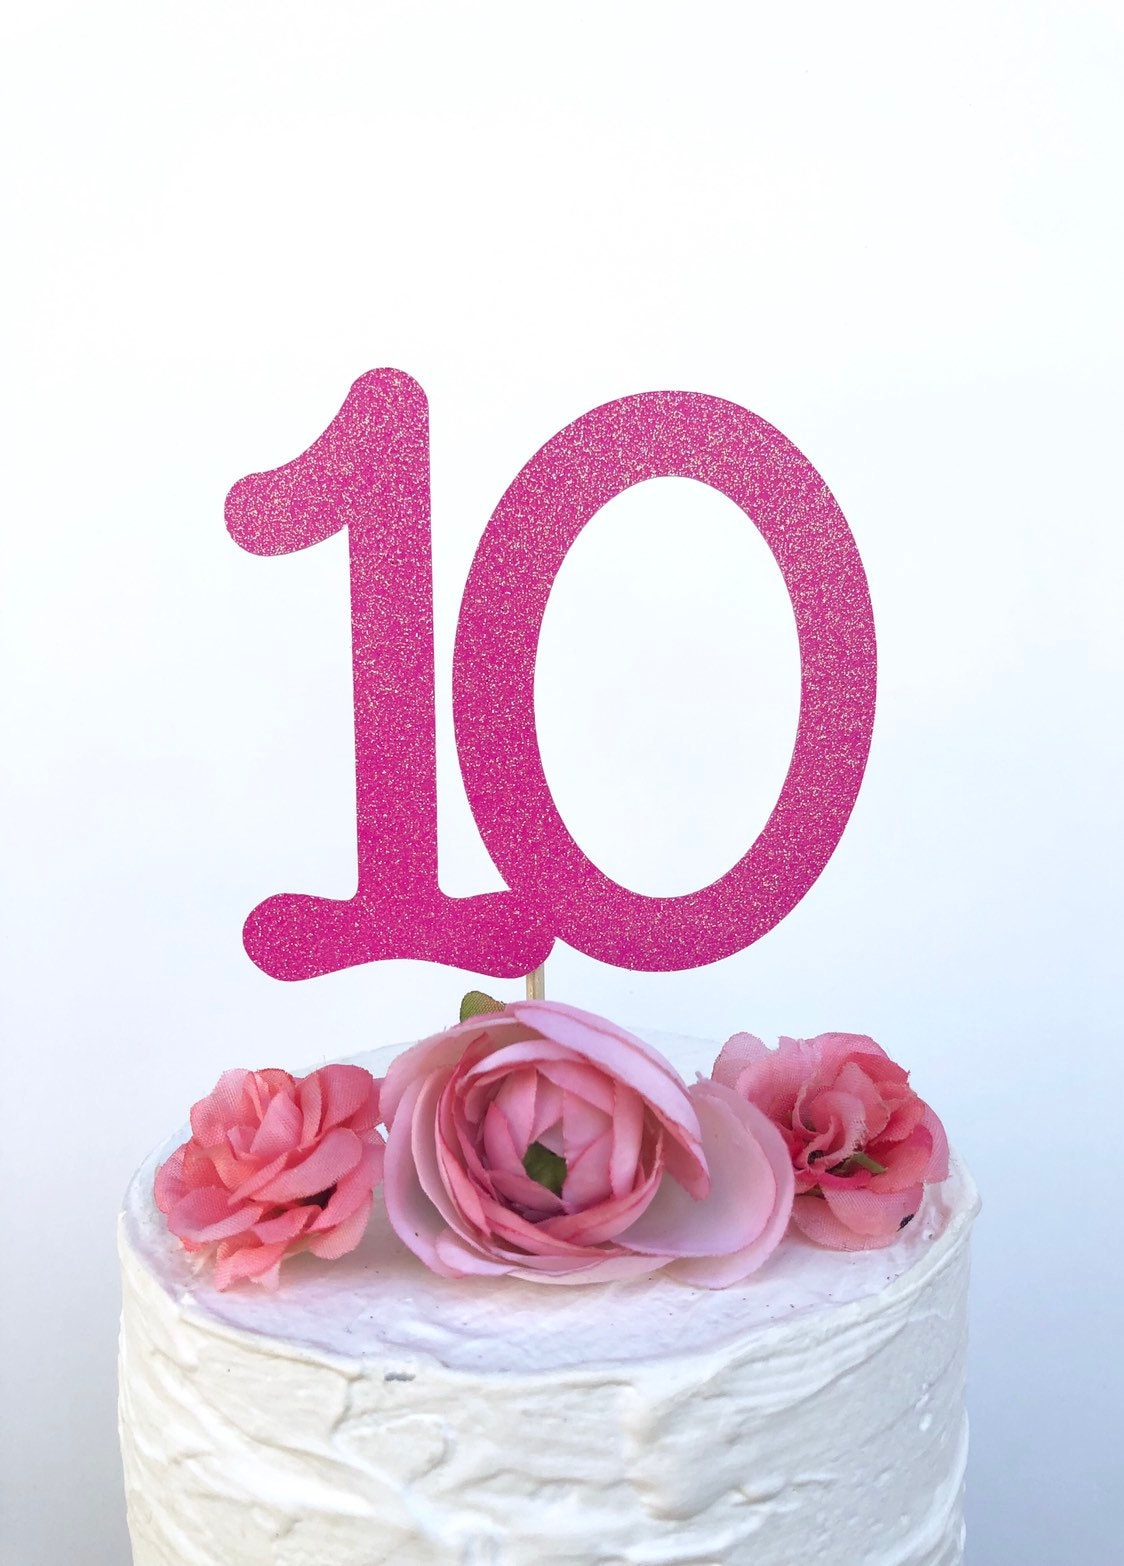 Decoration de gateau anniversaire 10 ans fille, paillettes cake